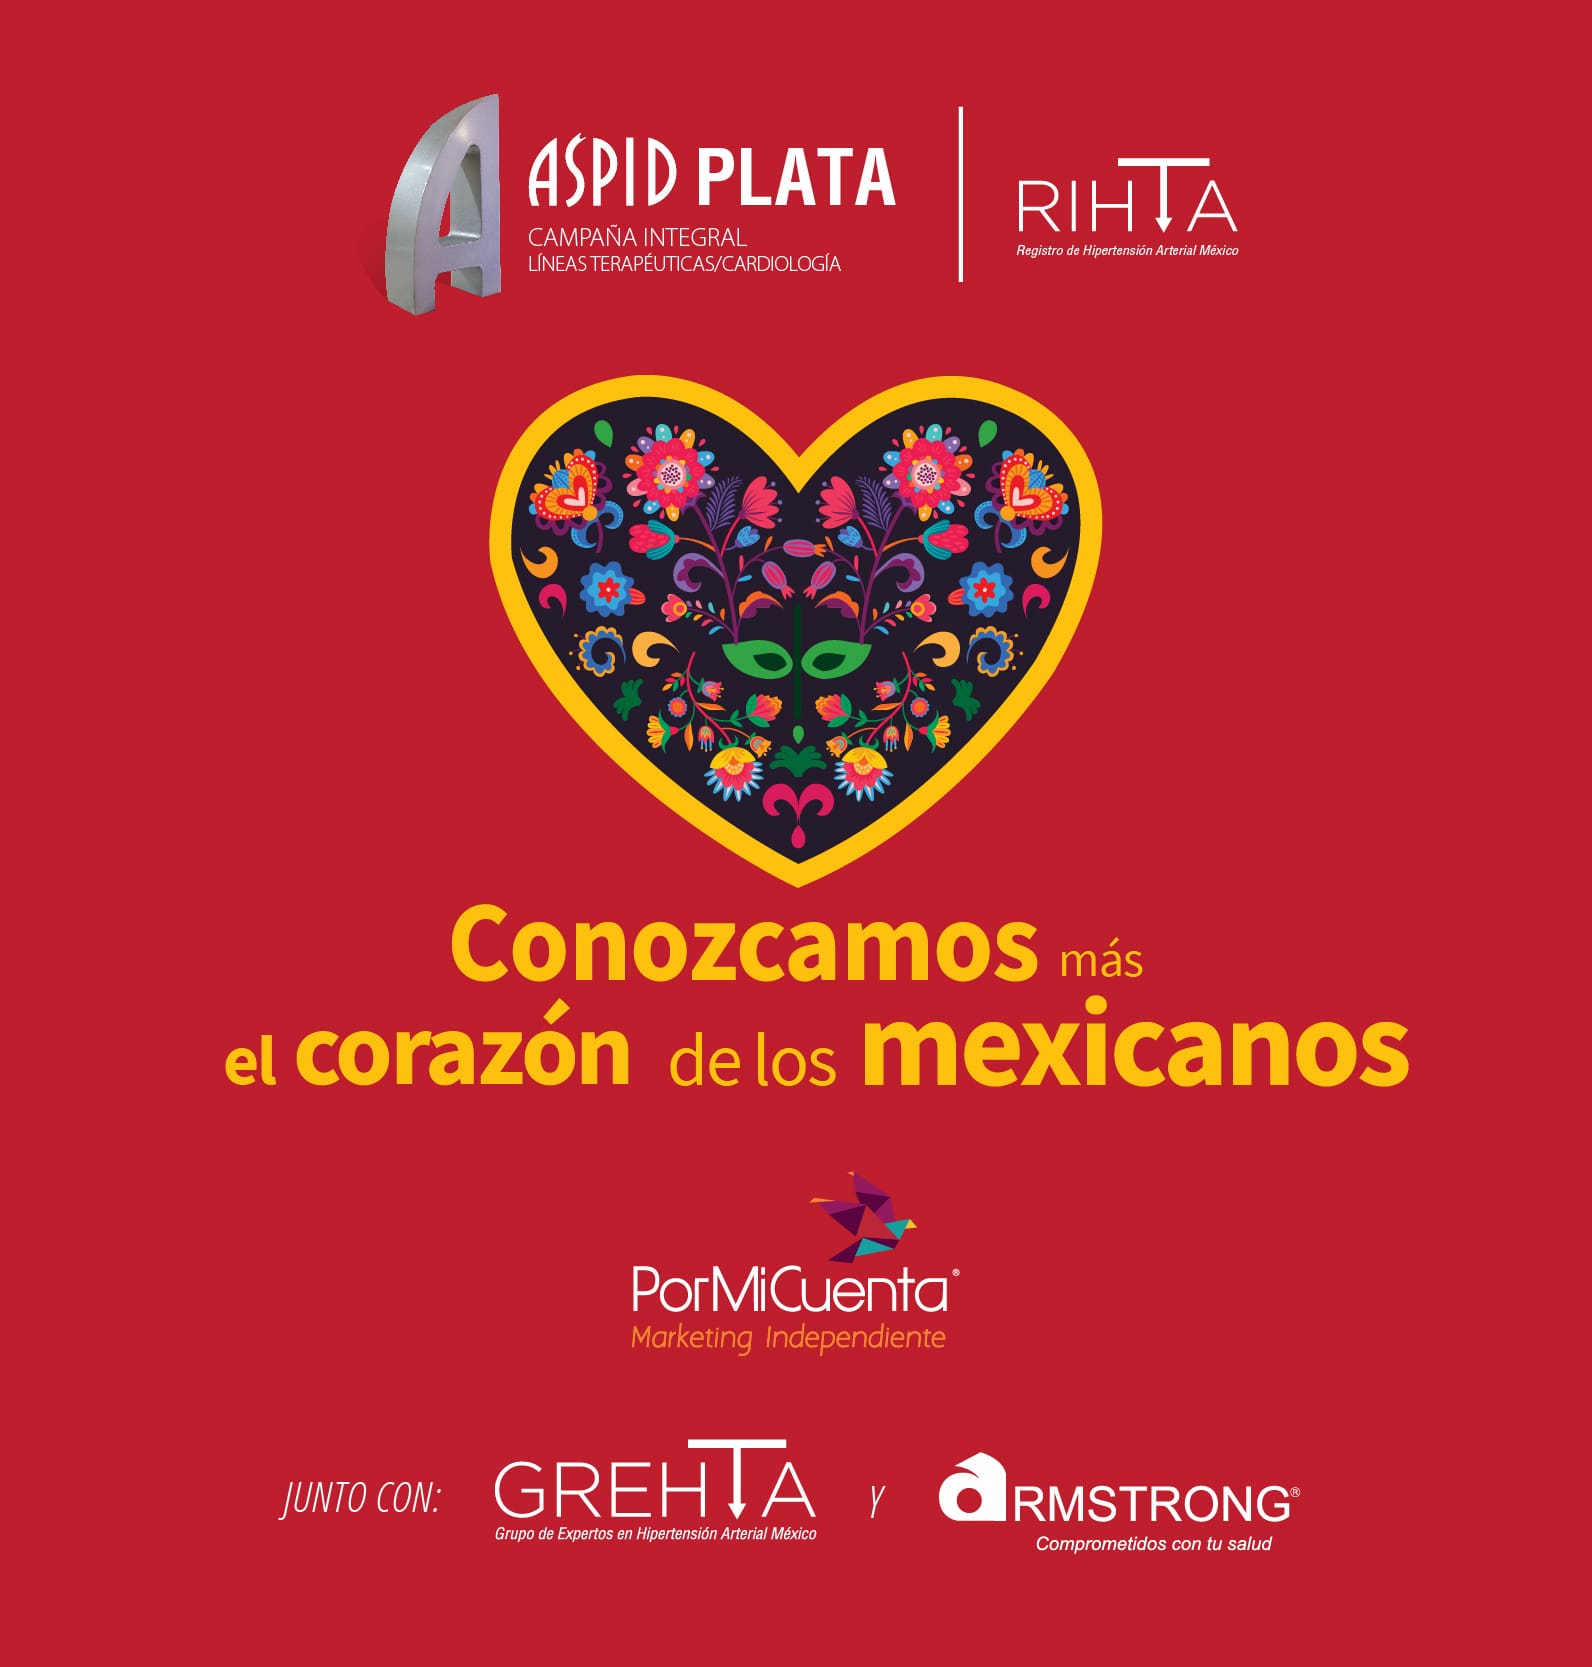 GREHTA gana ASPID de plata en campaña integral cardiología por RIHTA, conozcamos el corazón de los mexicanos